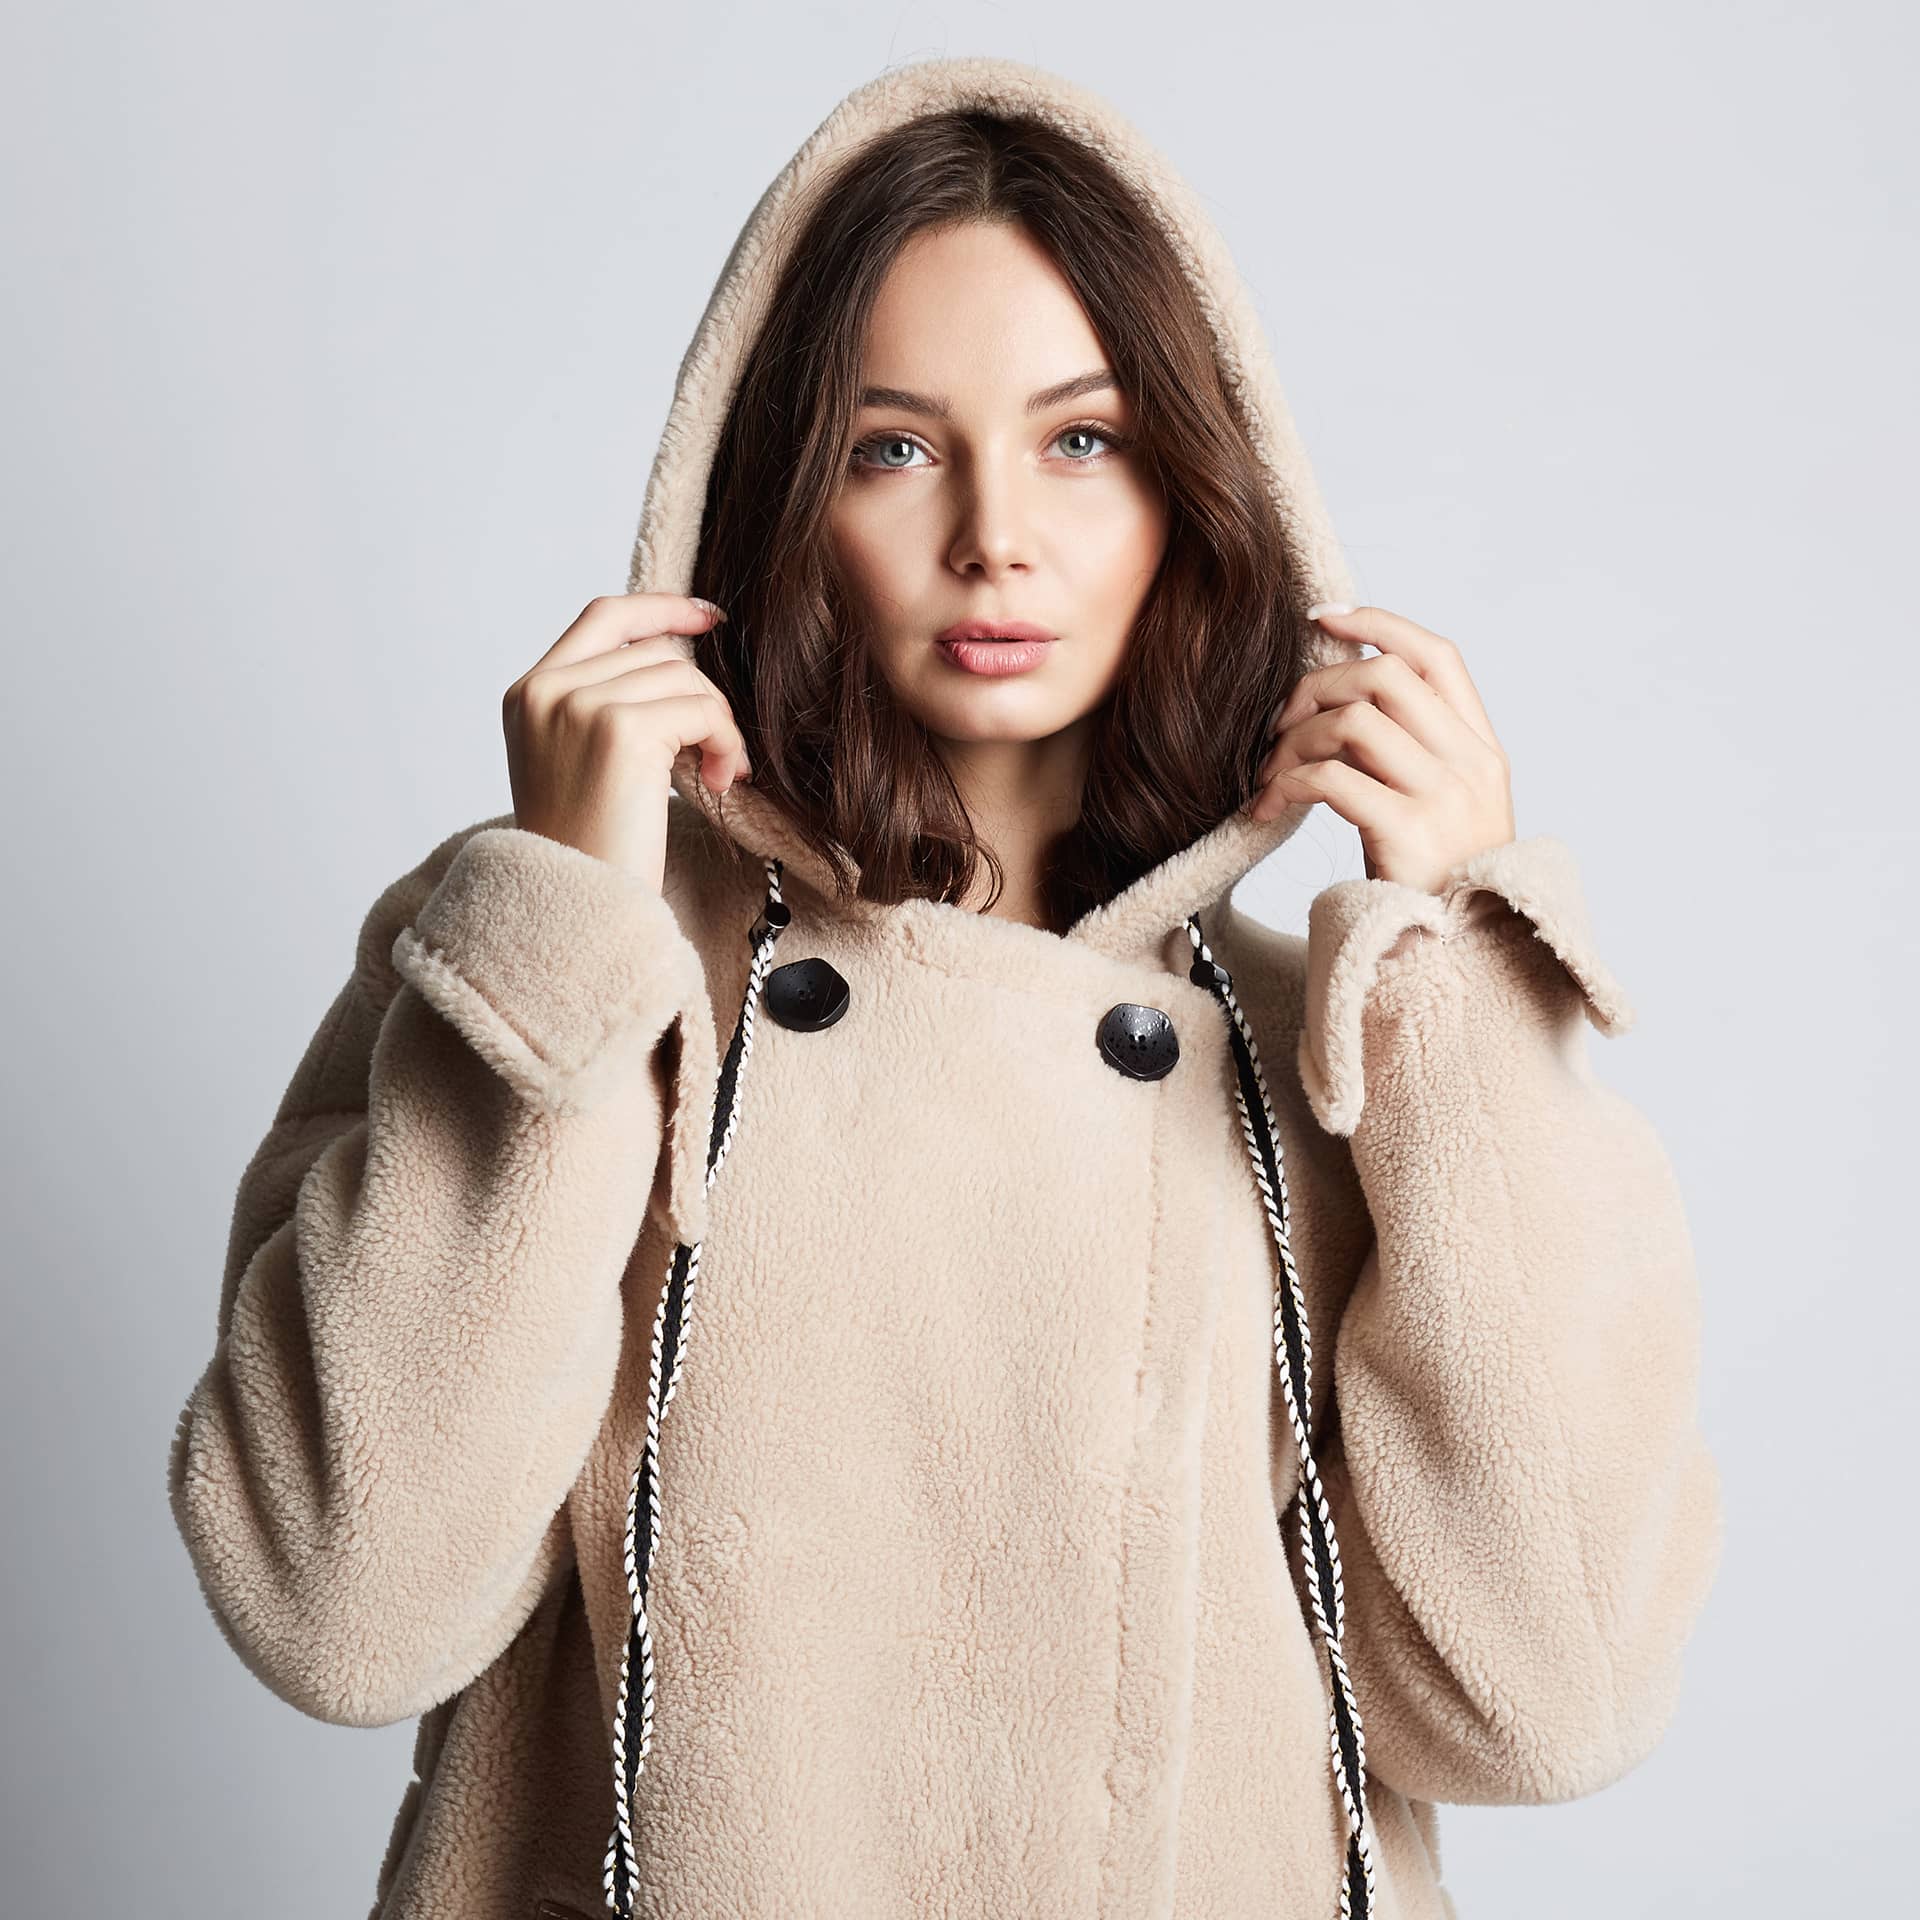 Beauty young woman wearing fur hood beautiful girl hoodie coat